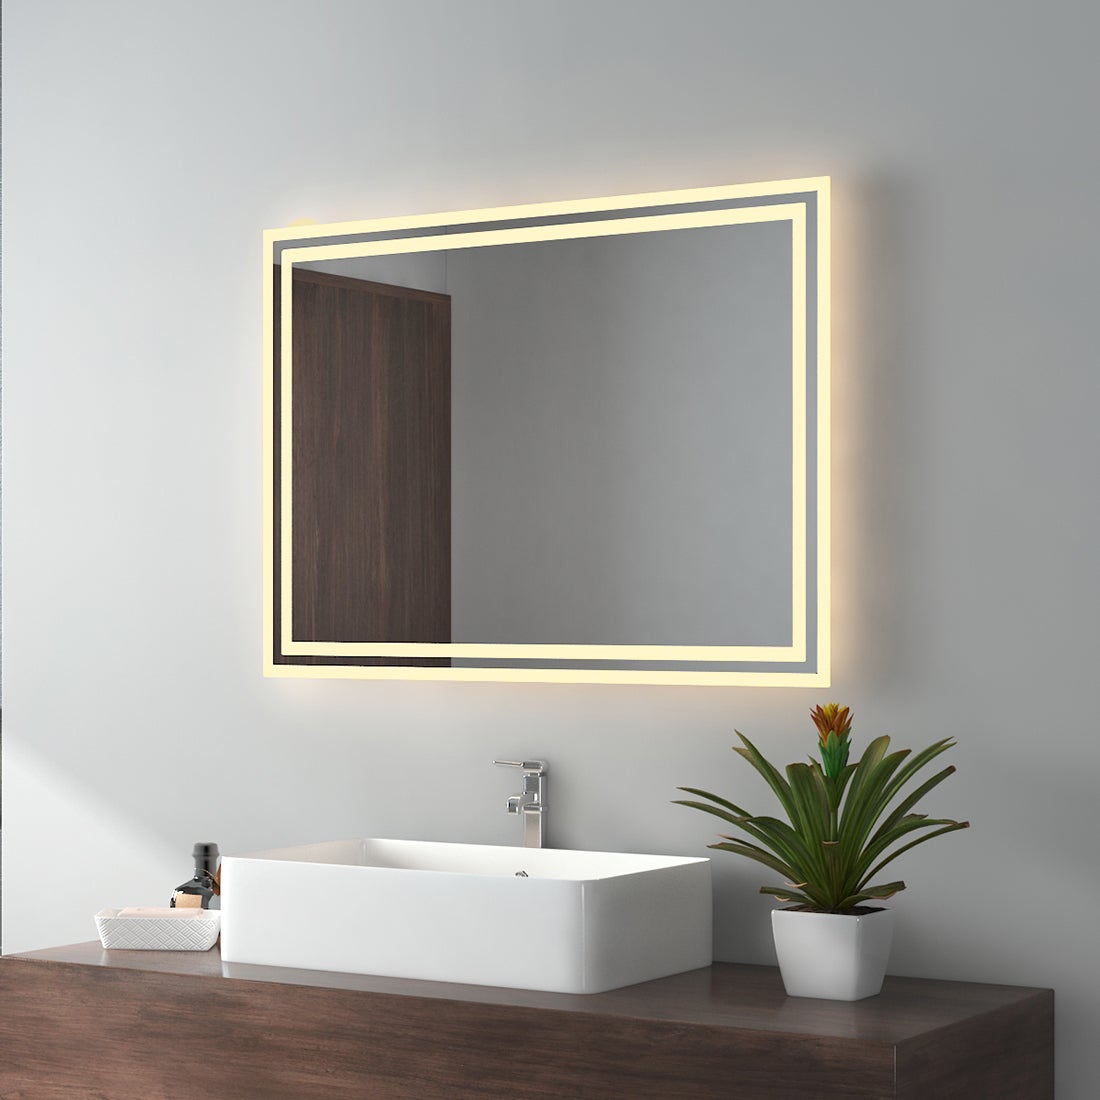 EMKE Badspiegel LED IP44 Wasserdicht Wandspiegel, 80x60cm, Warmweißes Licht